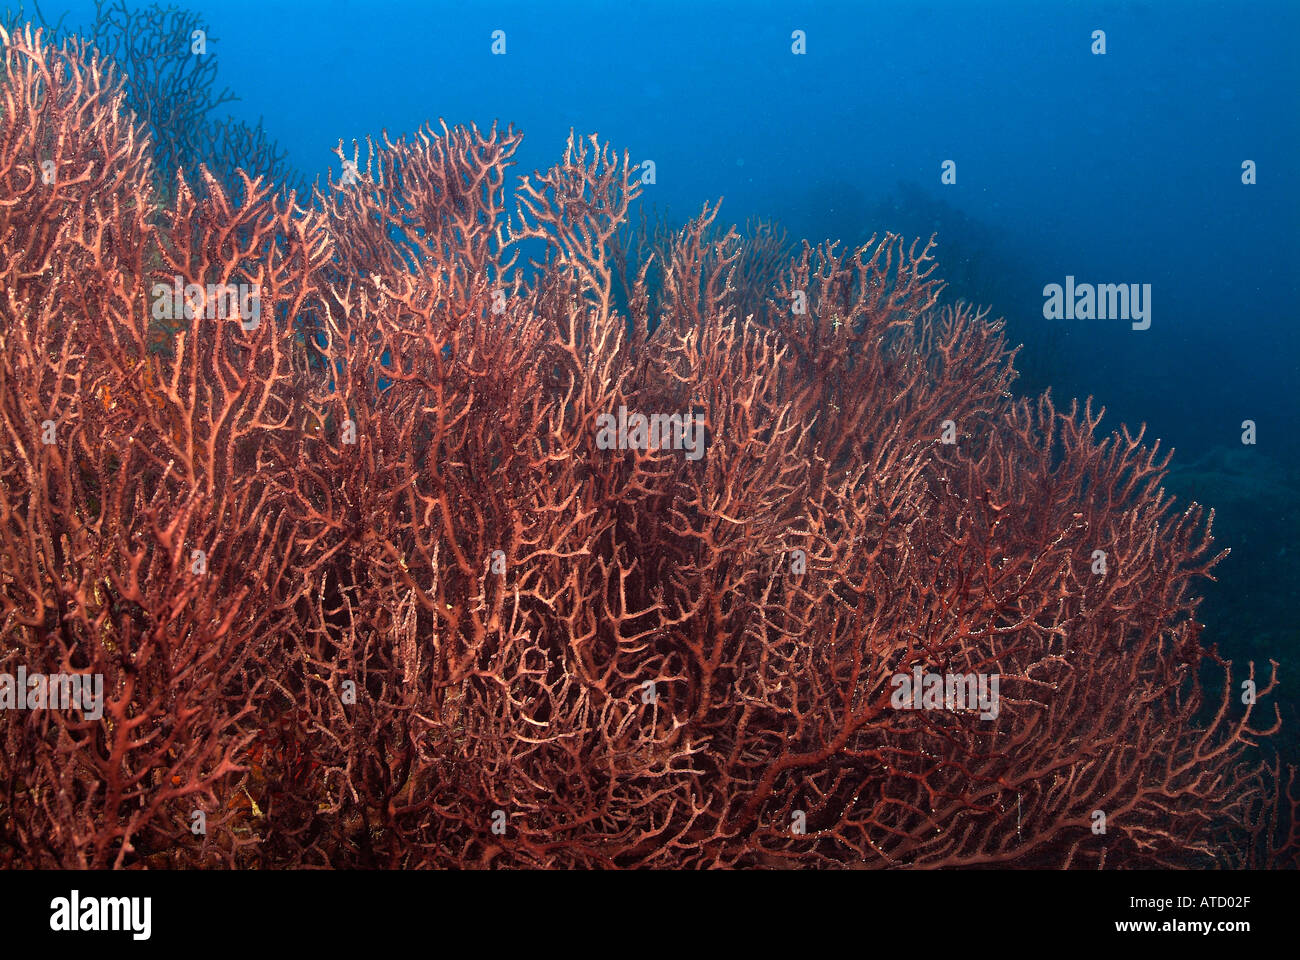 Domaine de l'eau profonde, des fans de la mer au large de l'île de Bimini, Bahamas Banque D'Images